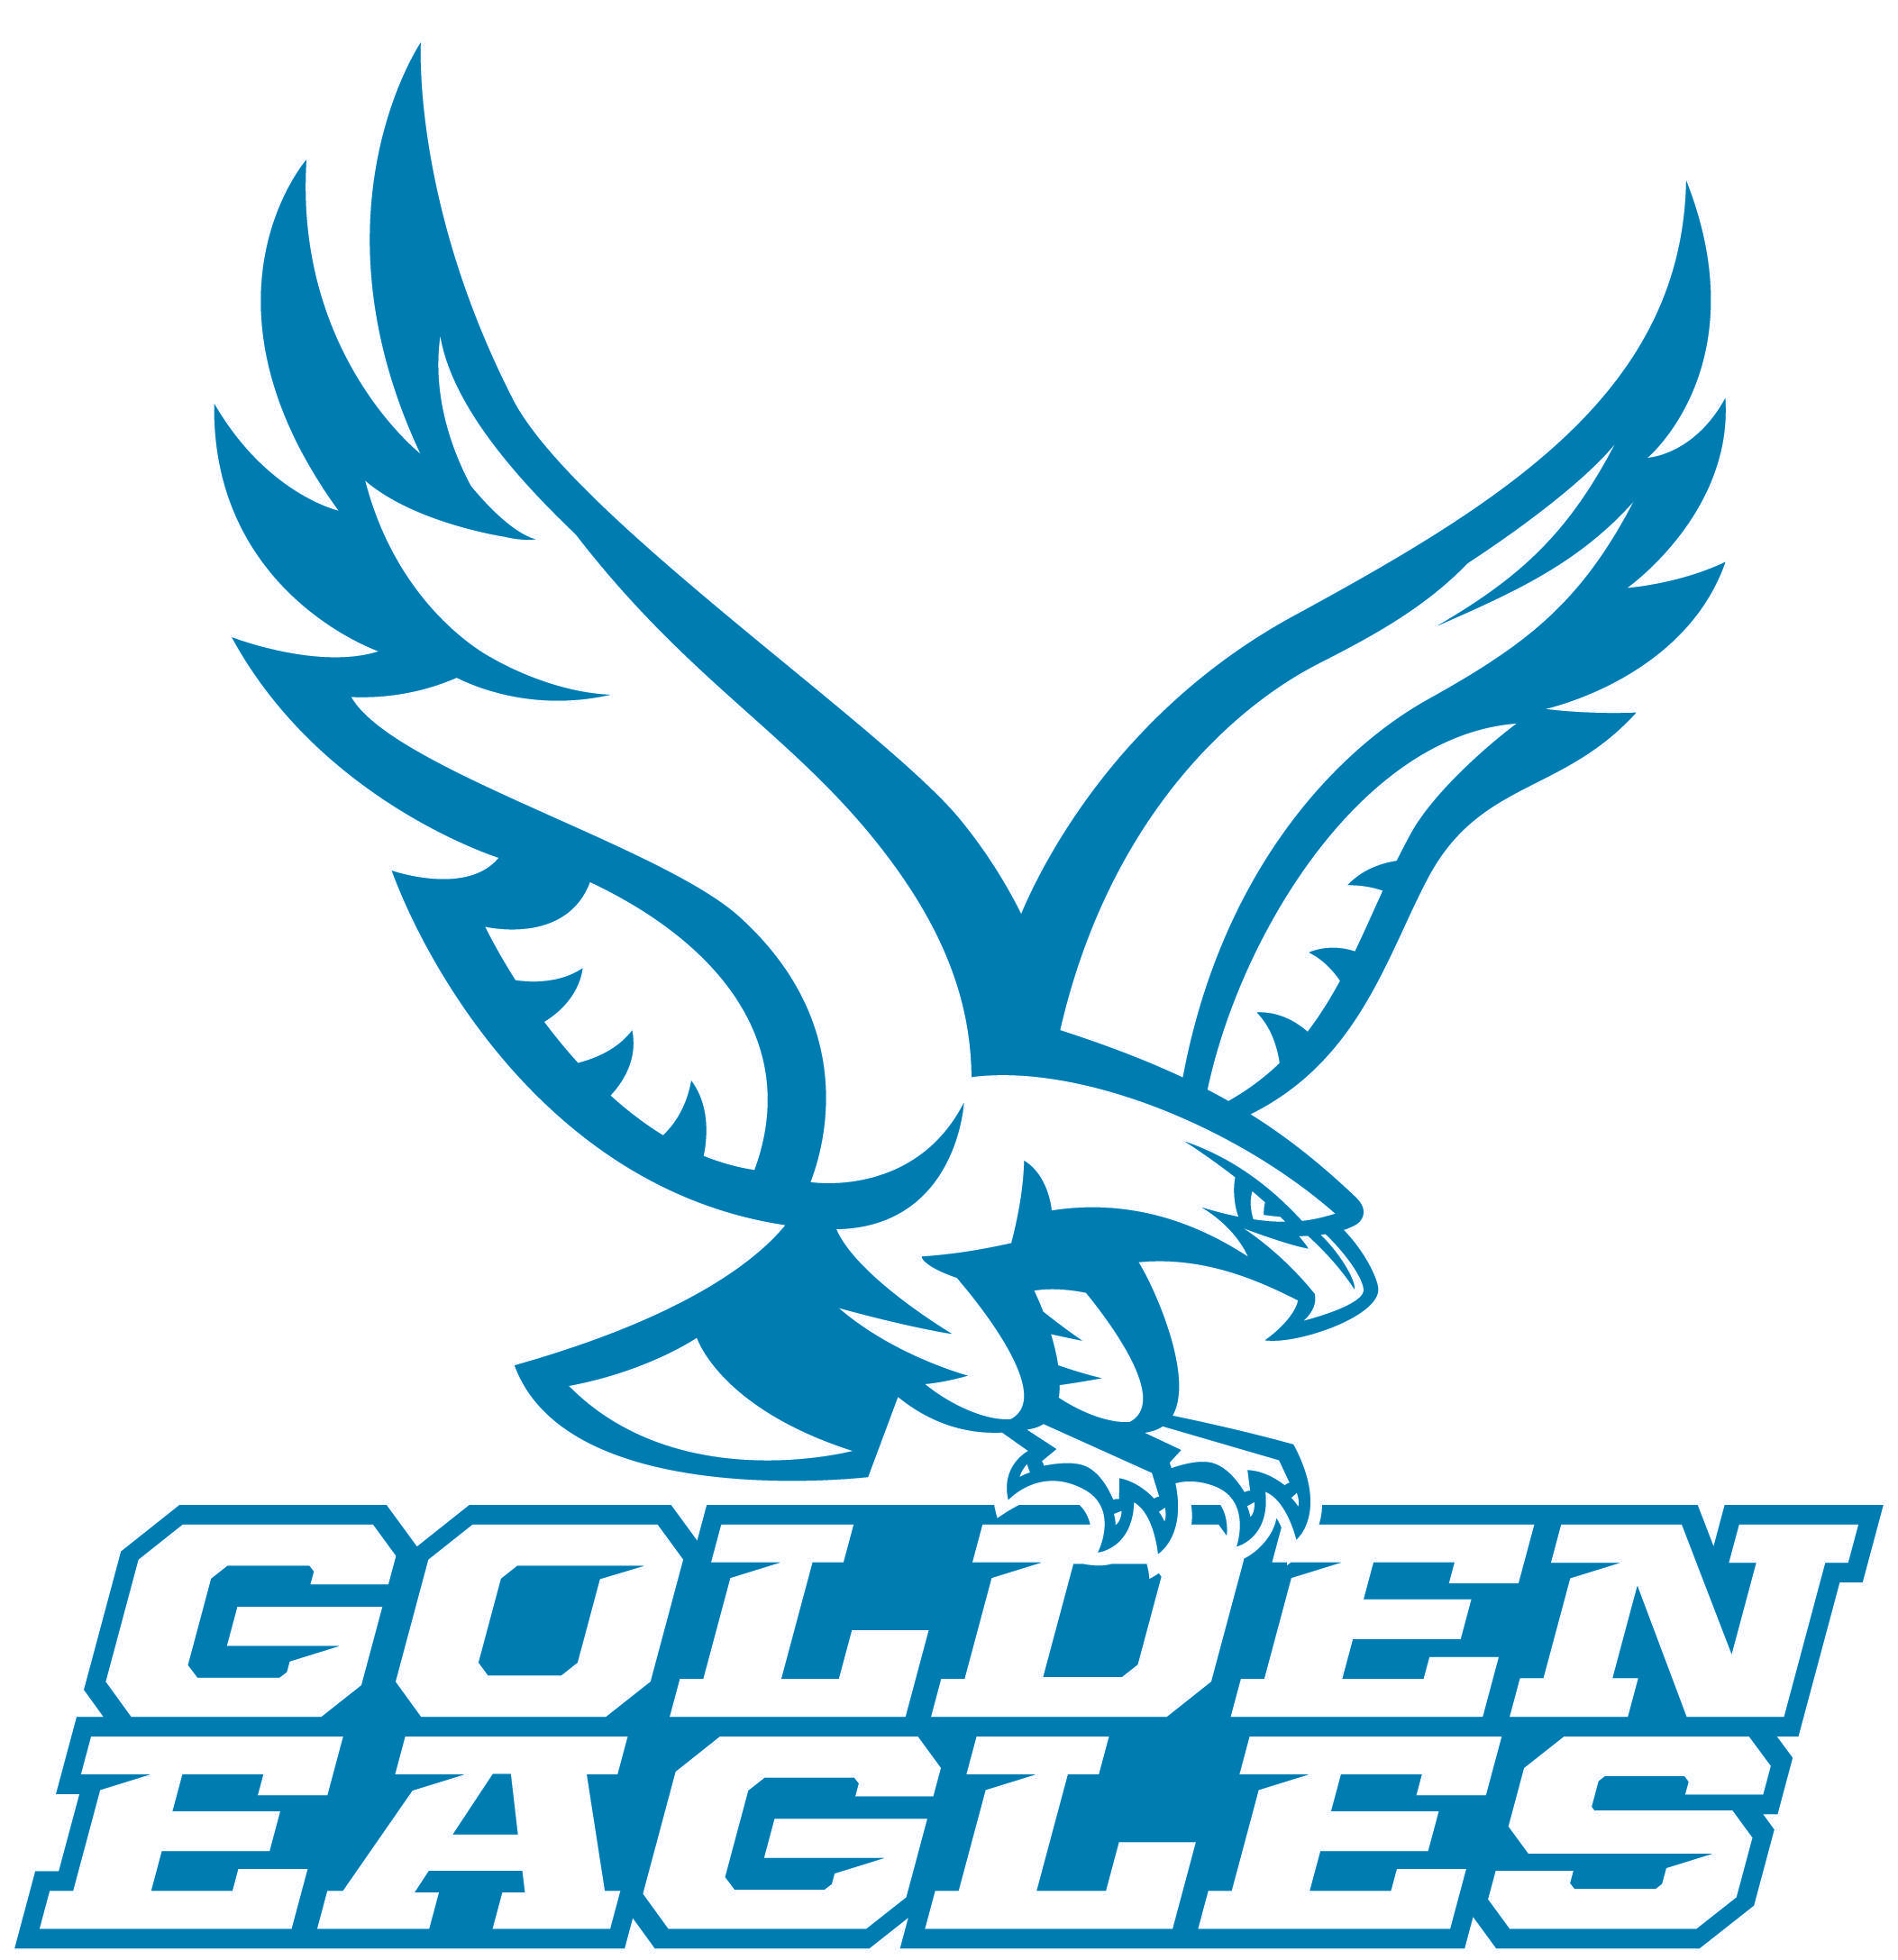 Eagles Name Logo - Athletic Logos - About Us - Holy Family Catholic Schools